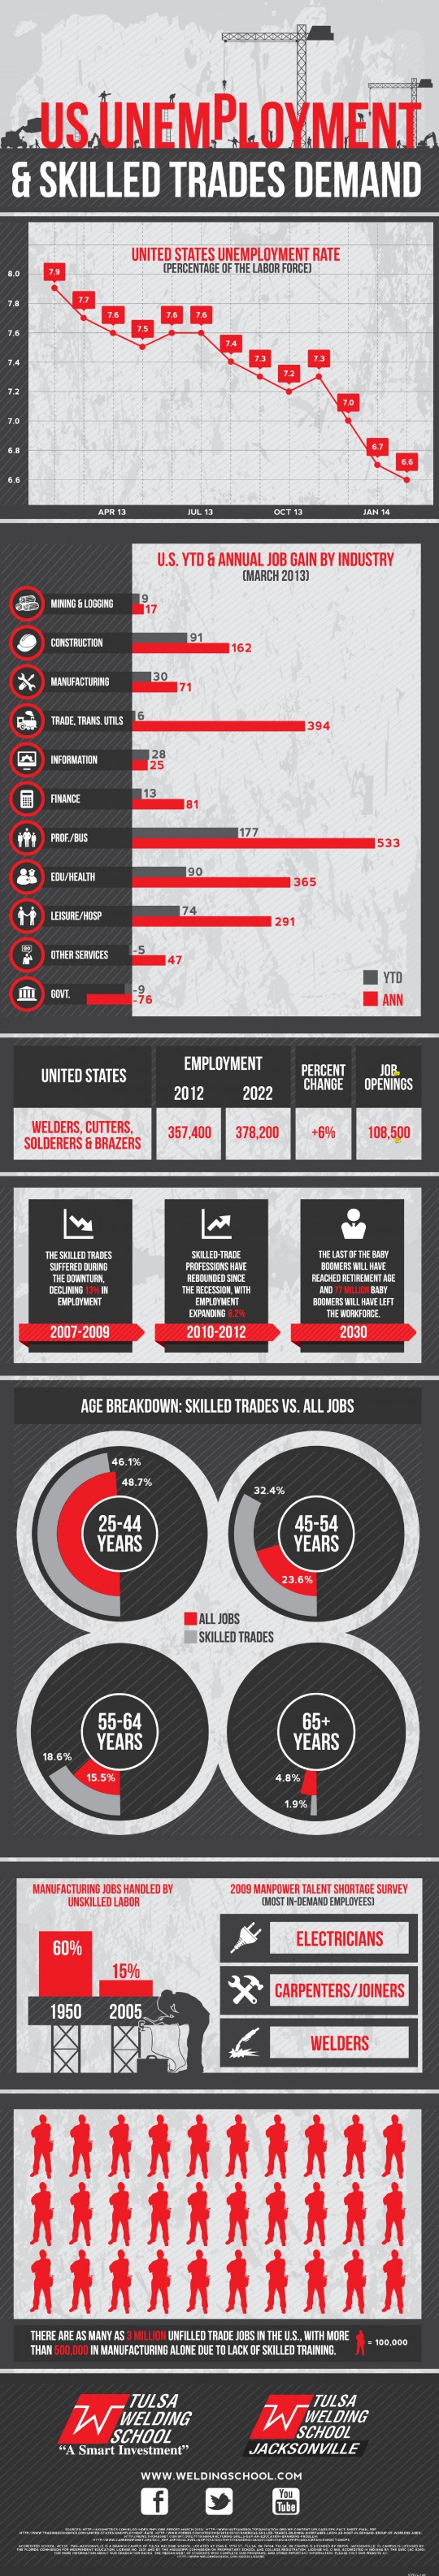 US Unemployment & Skilled Trades Demand